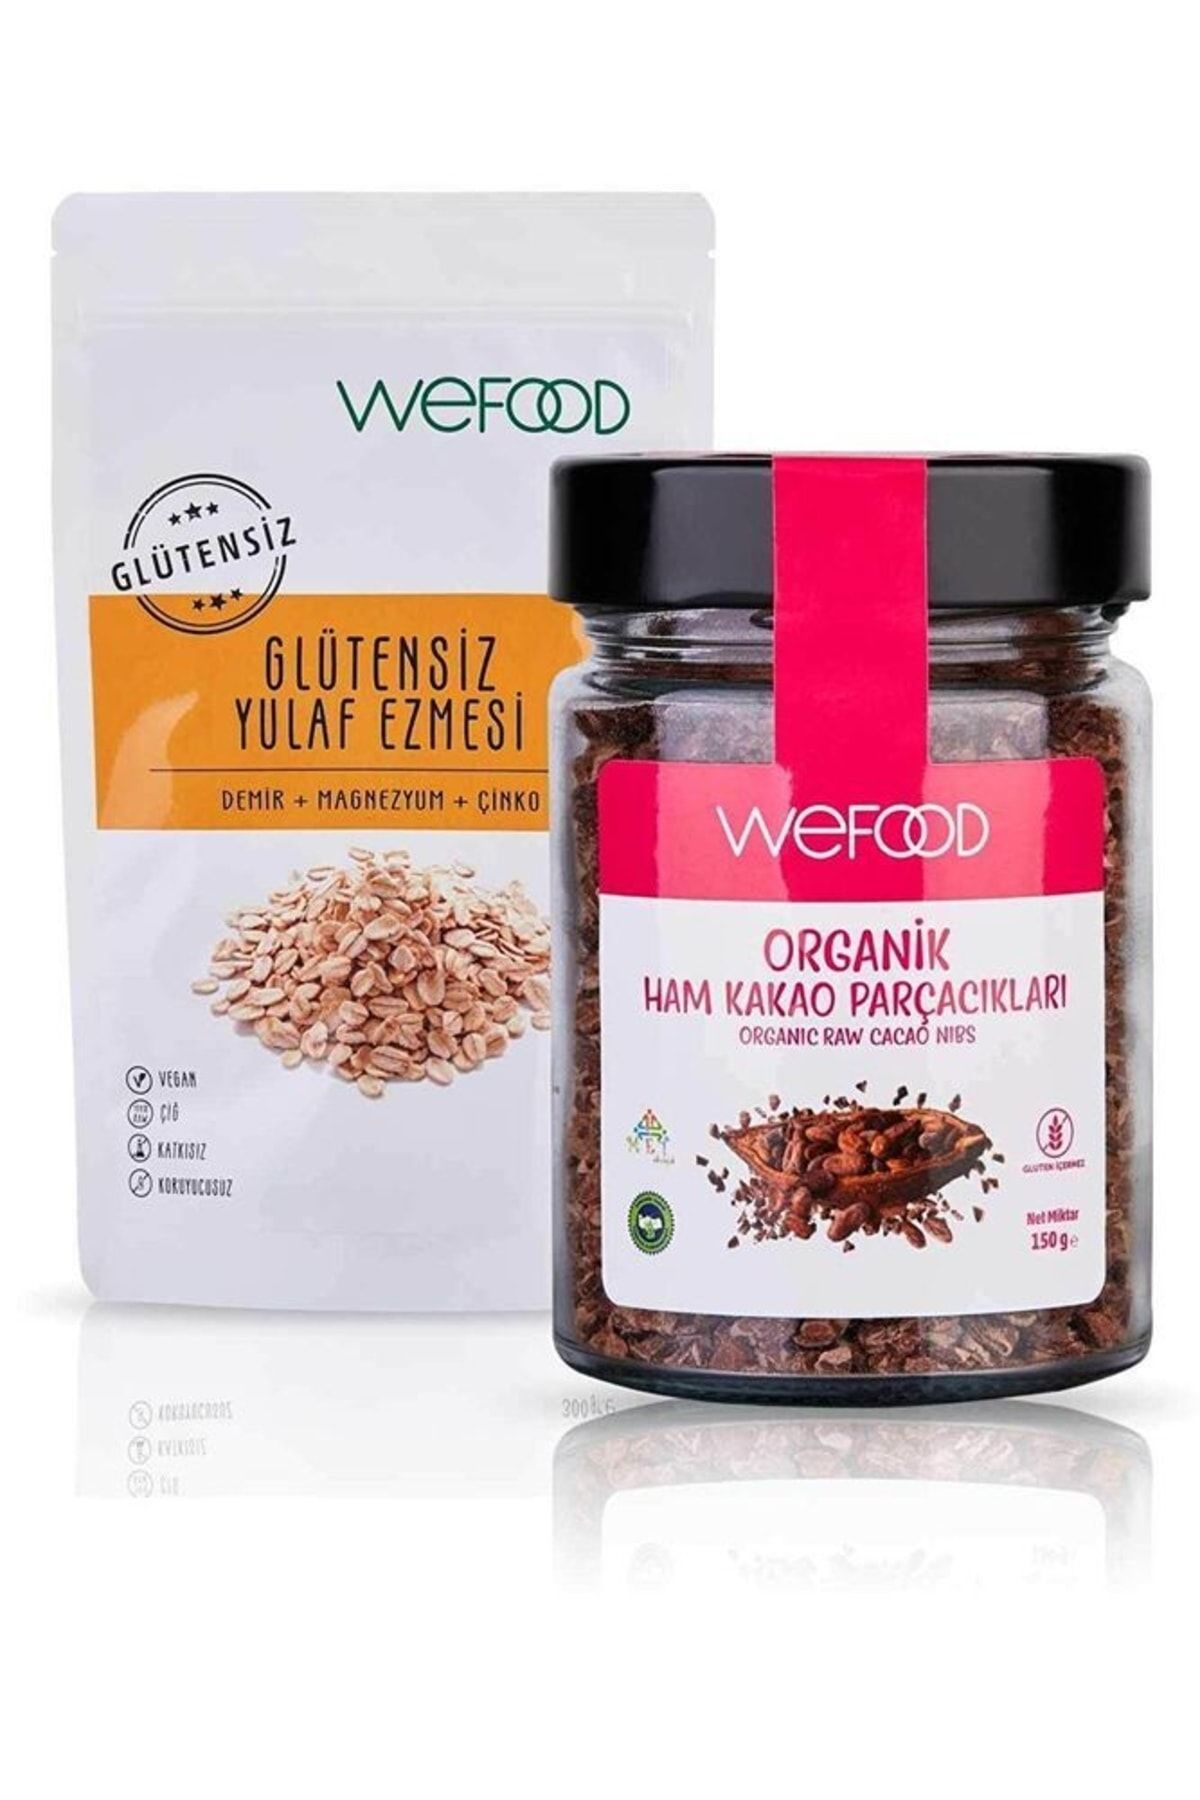 Wefood Glütensiz Yulaf Ezmesi 300 Gr + Organik Ham Kakao Parçacıkları 150 Gr Avantaj Seti